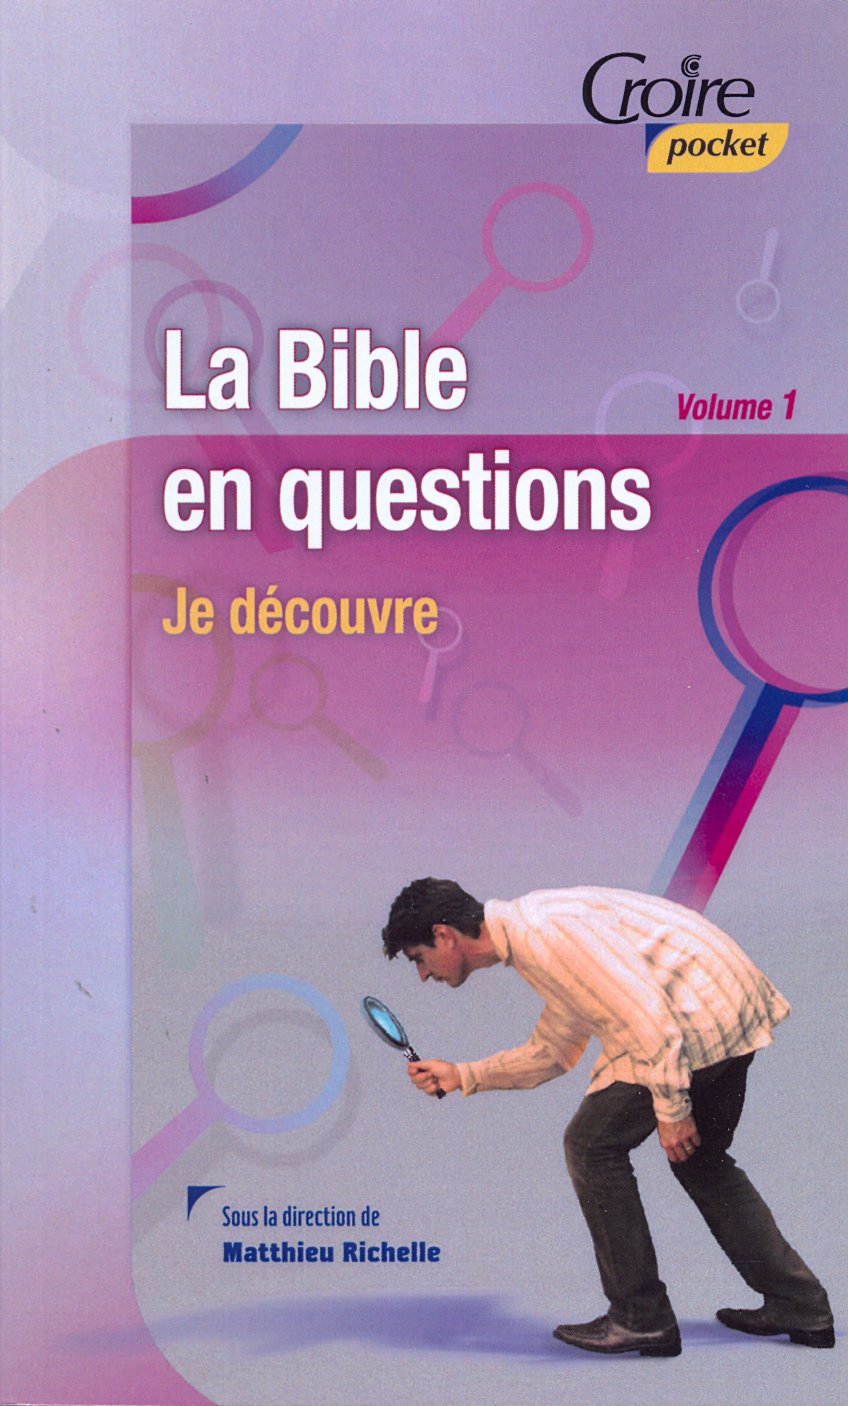 Bible en questions (La) - Volume 1 - Croire pocket 25